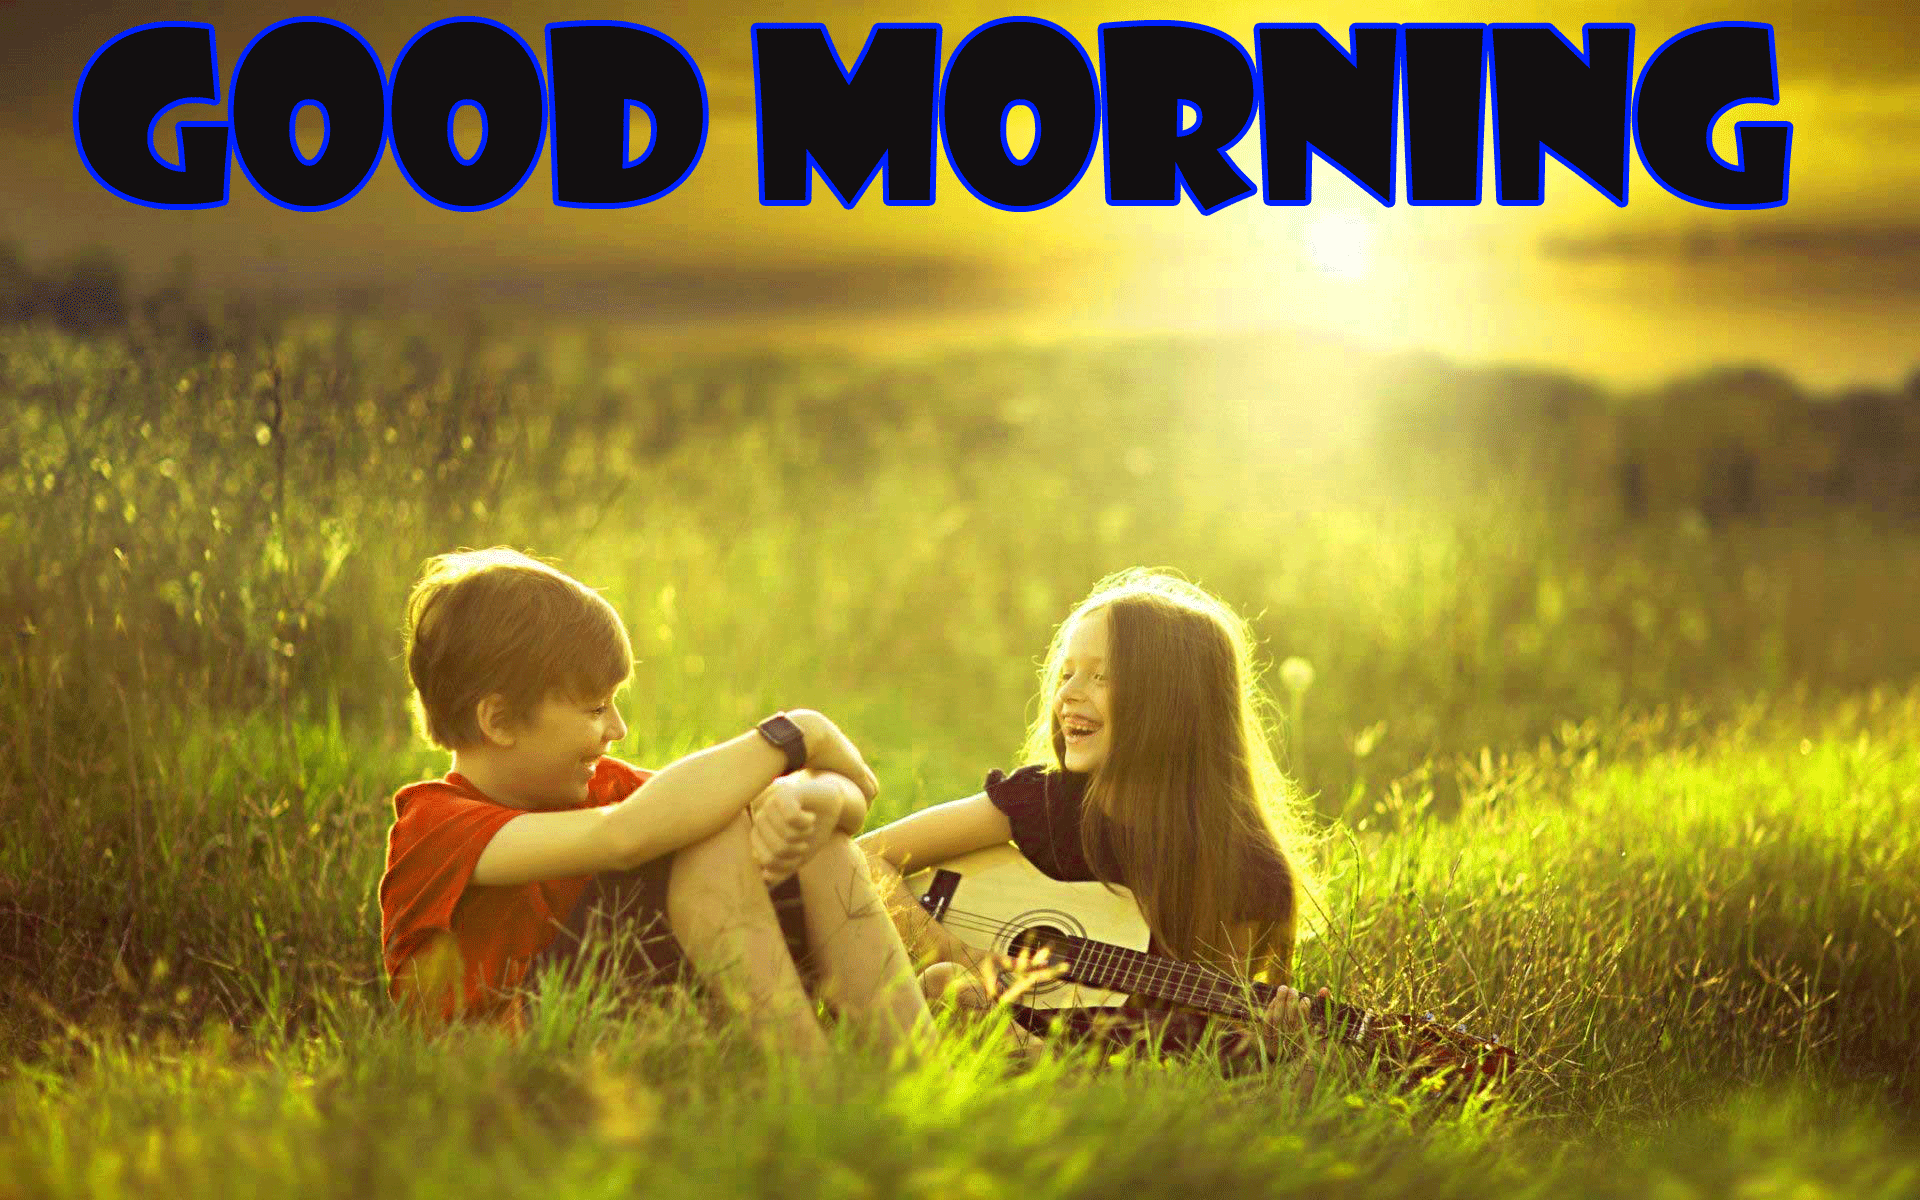 Romantic Good Morning Images Wallpaper Pics Hd Download - Cute Good Morning Pics Hd , HD Wallpaper & Backgrounds